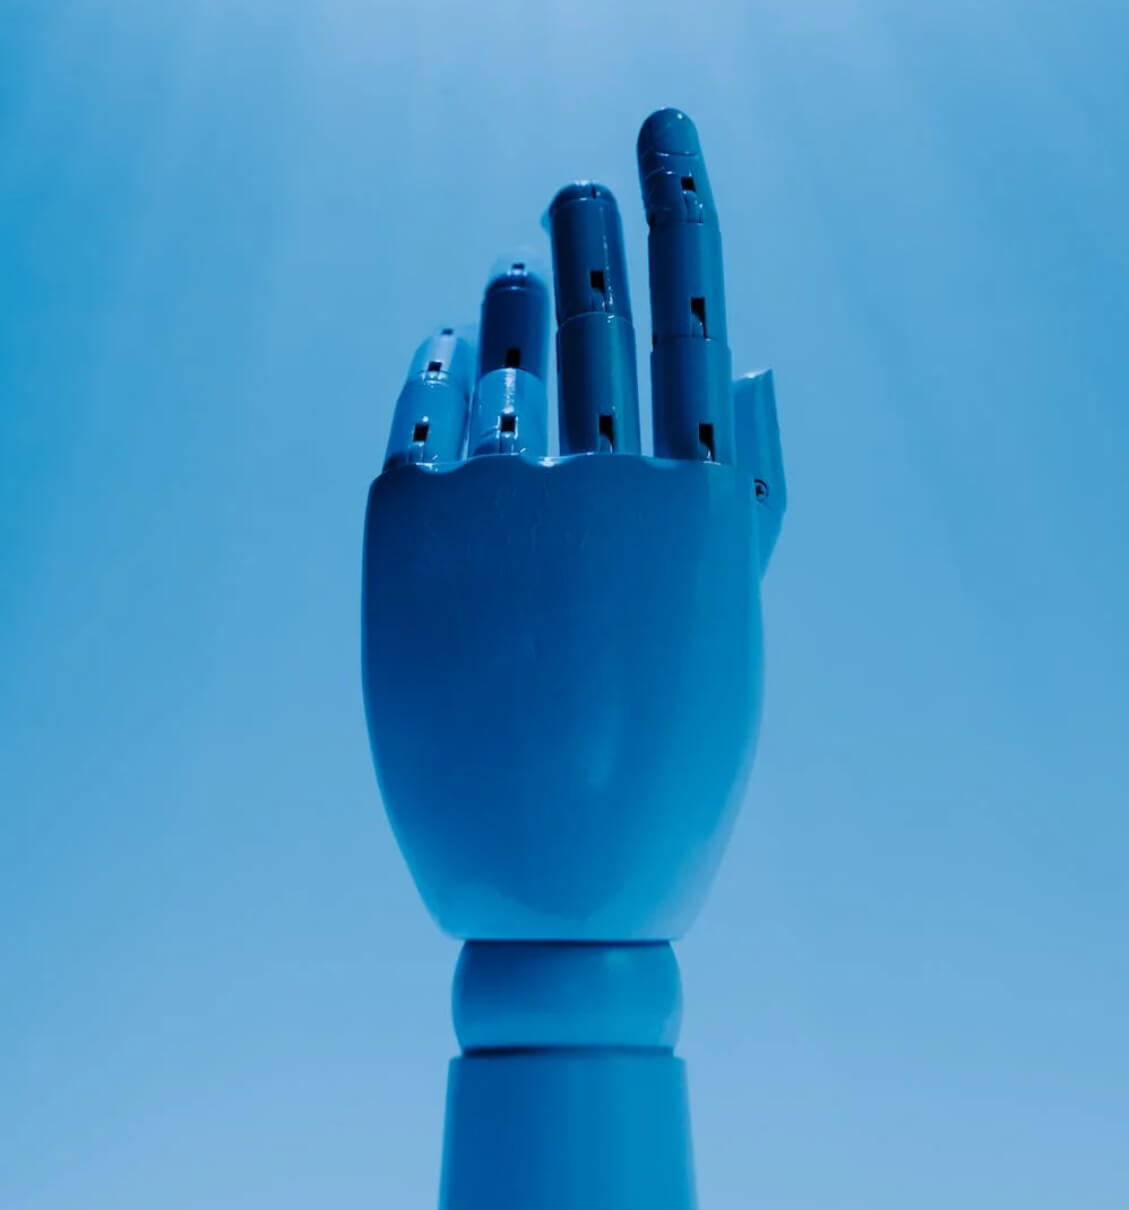 Mano de robot en fondo azul